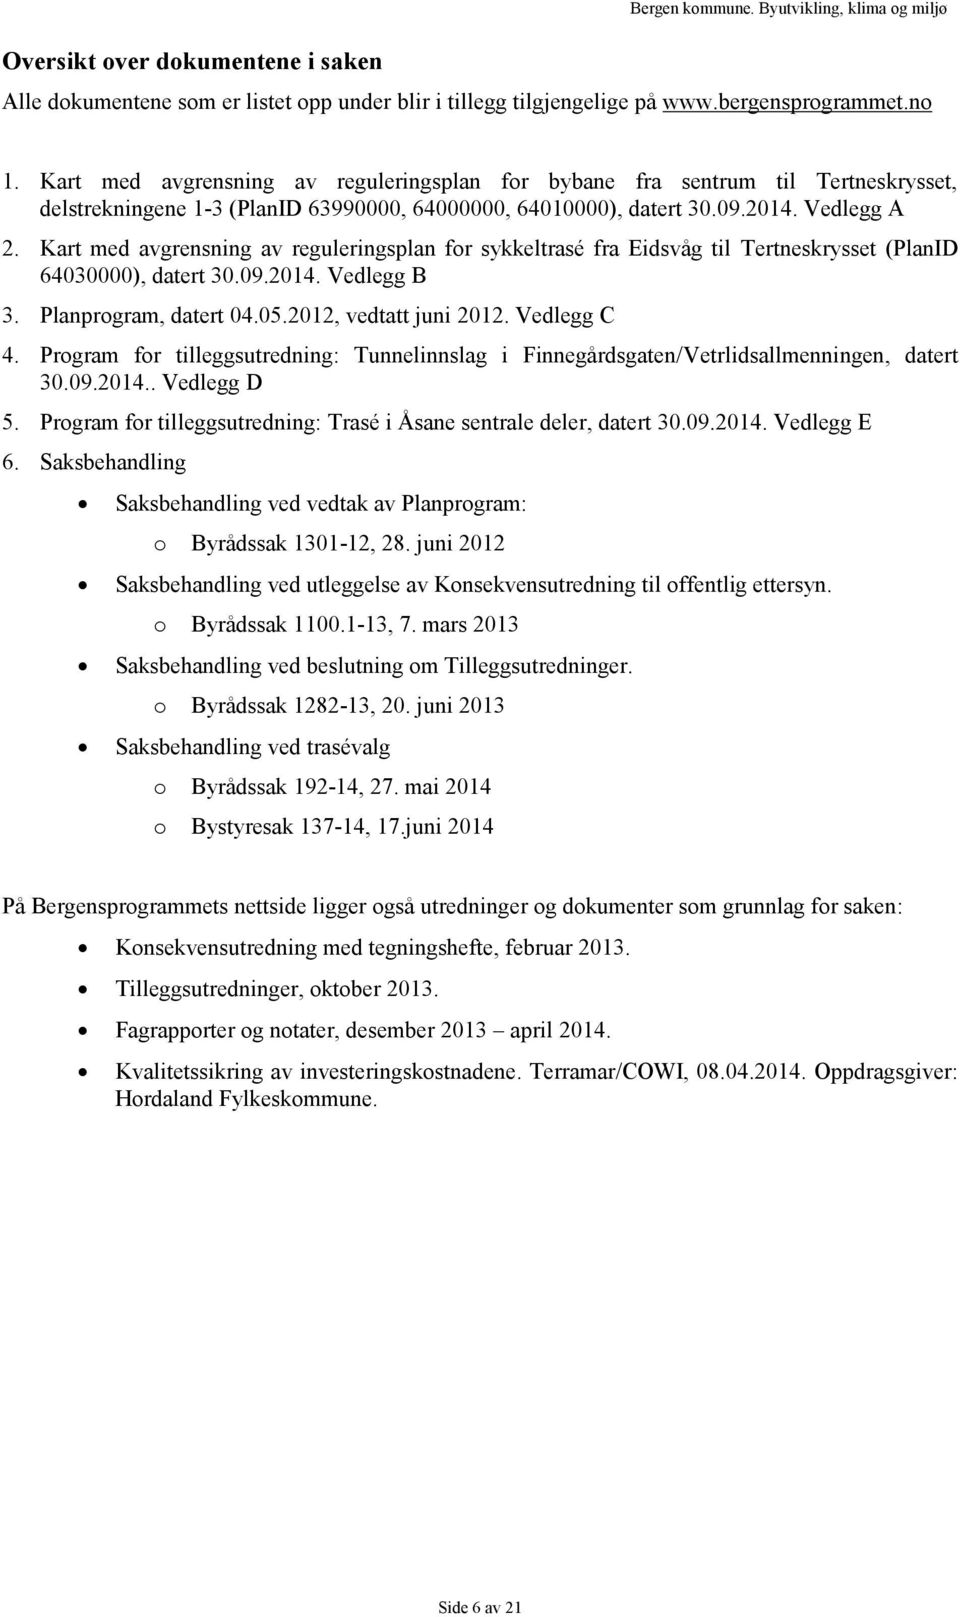 Kart med avgrensning av reguleringsplan for sykkeltrasé fra Eidsvåg til Tertneskrysset (PlanID 64030000), datert 30.09.2014. Vedlegg B 3. Planprogram, datert 04.05.2012, vedtatt juni 2012.